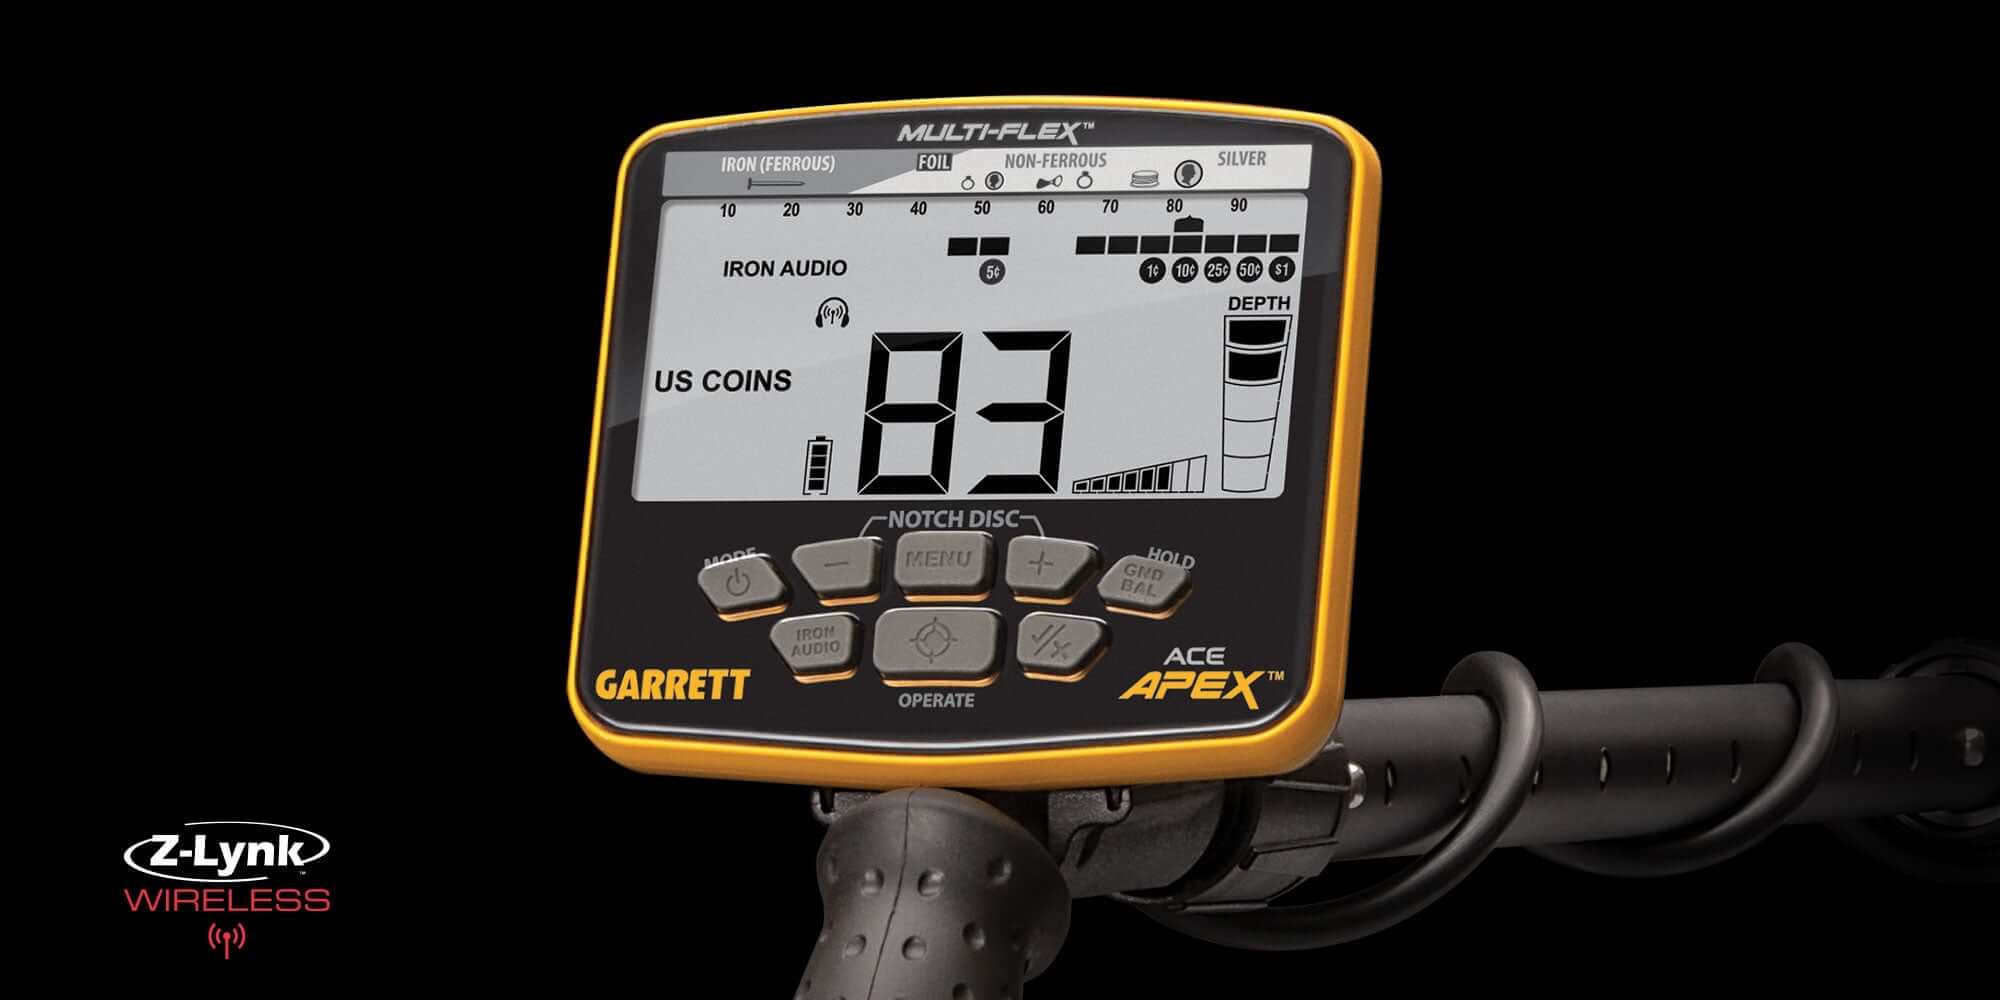 GARRETT ACE APEX 6X11 Viper - History Seekers Metal Detectors